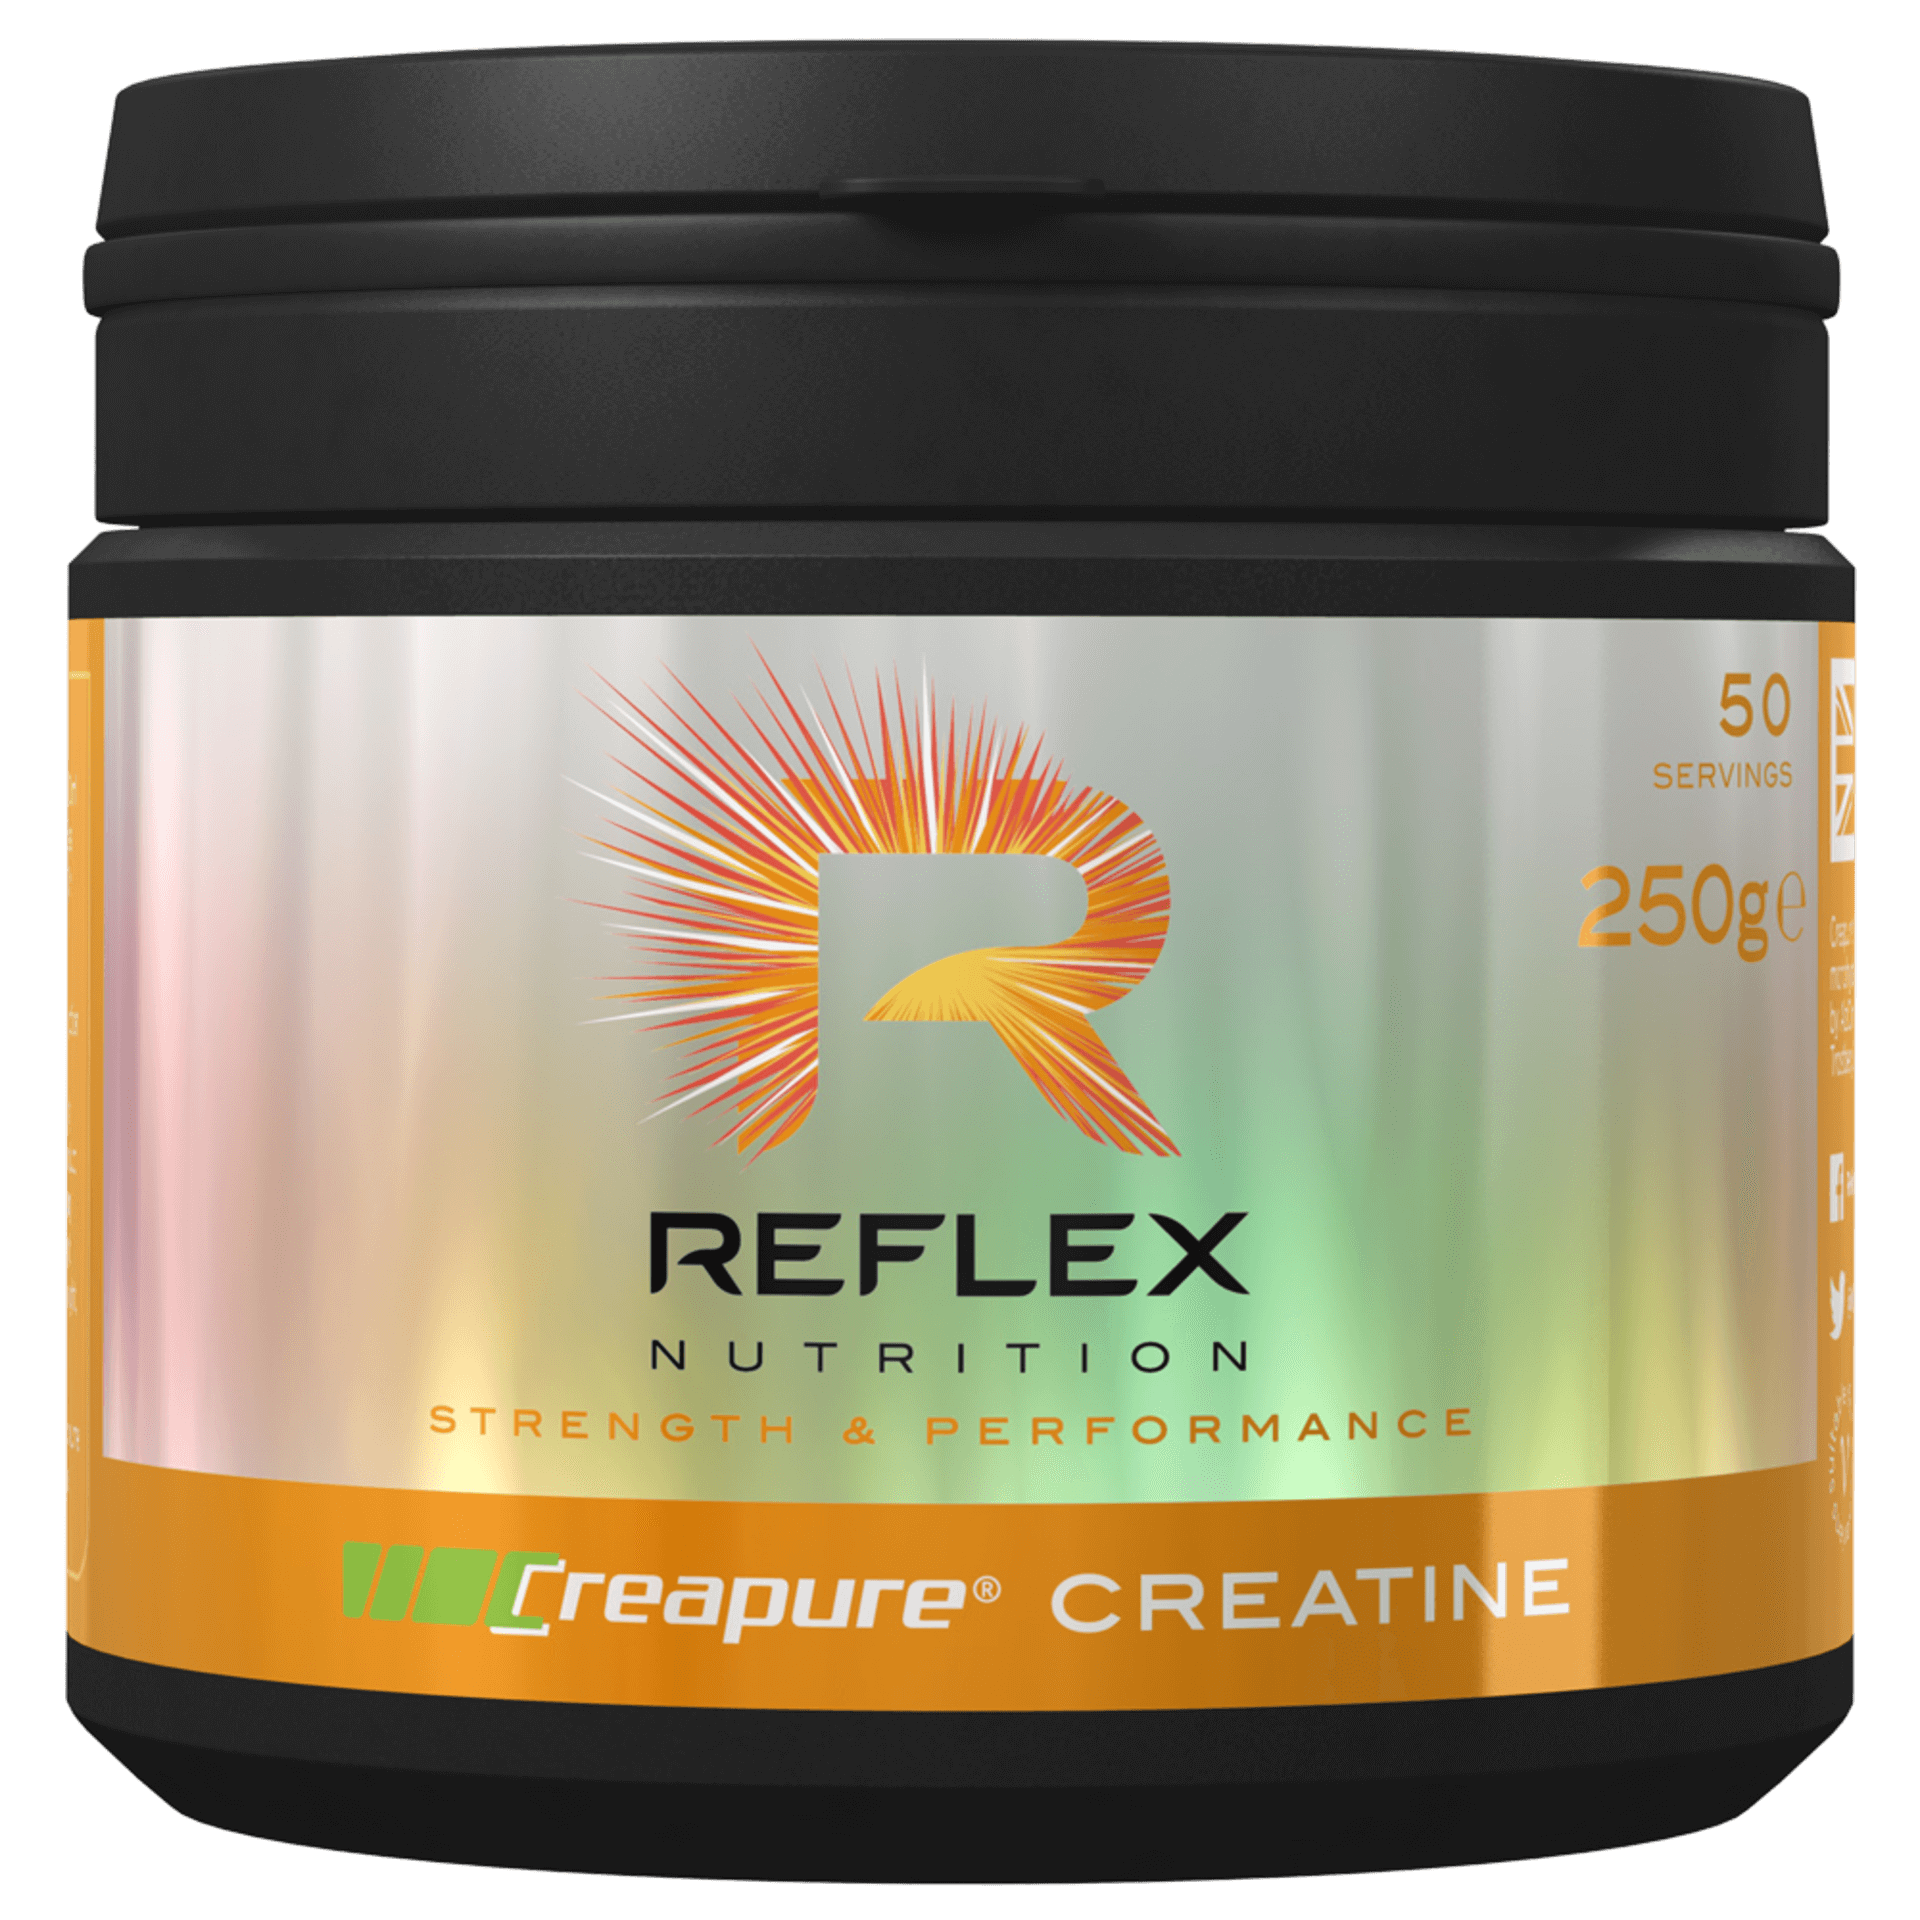 Reflex Nutrition Creapure Creatine 250 g